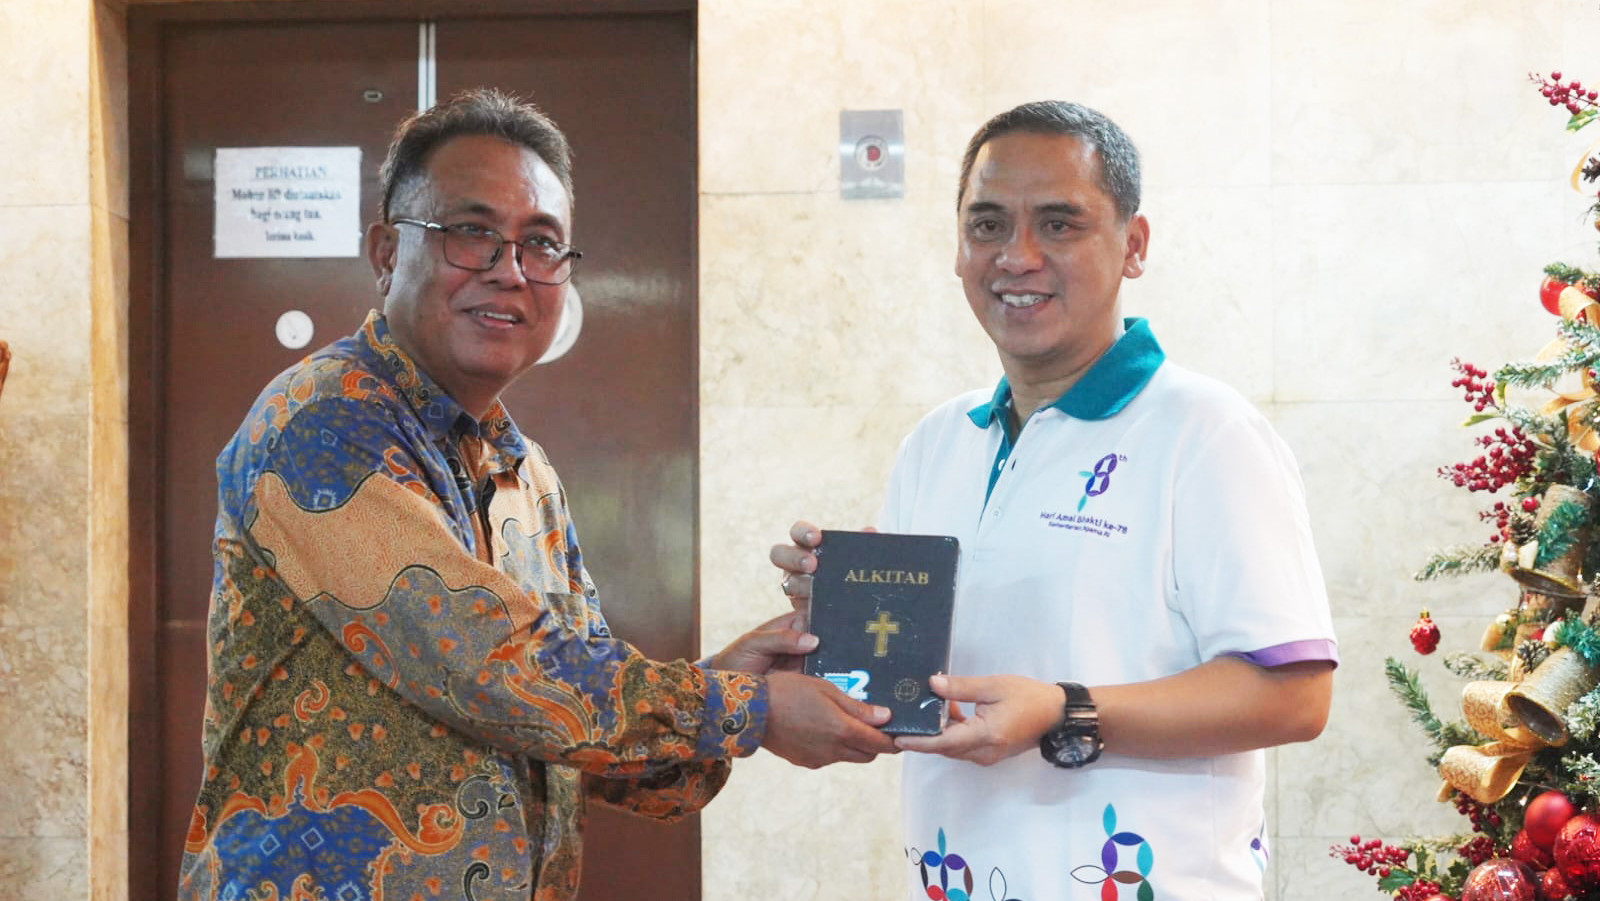 Wakil Menteri Agama Saiful Rahmat Dasuki memberikan al-Kitab ver 2 kepada pendeta Gunawan Hartono.